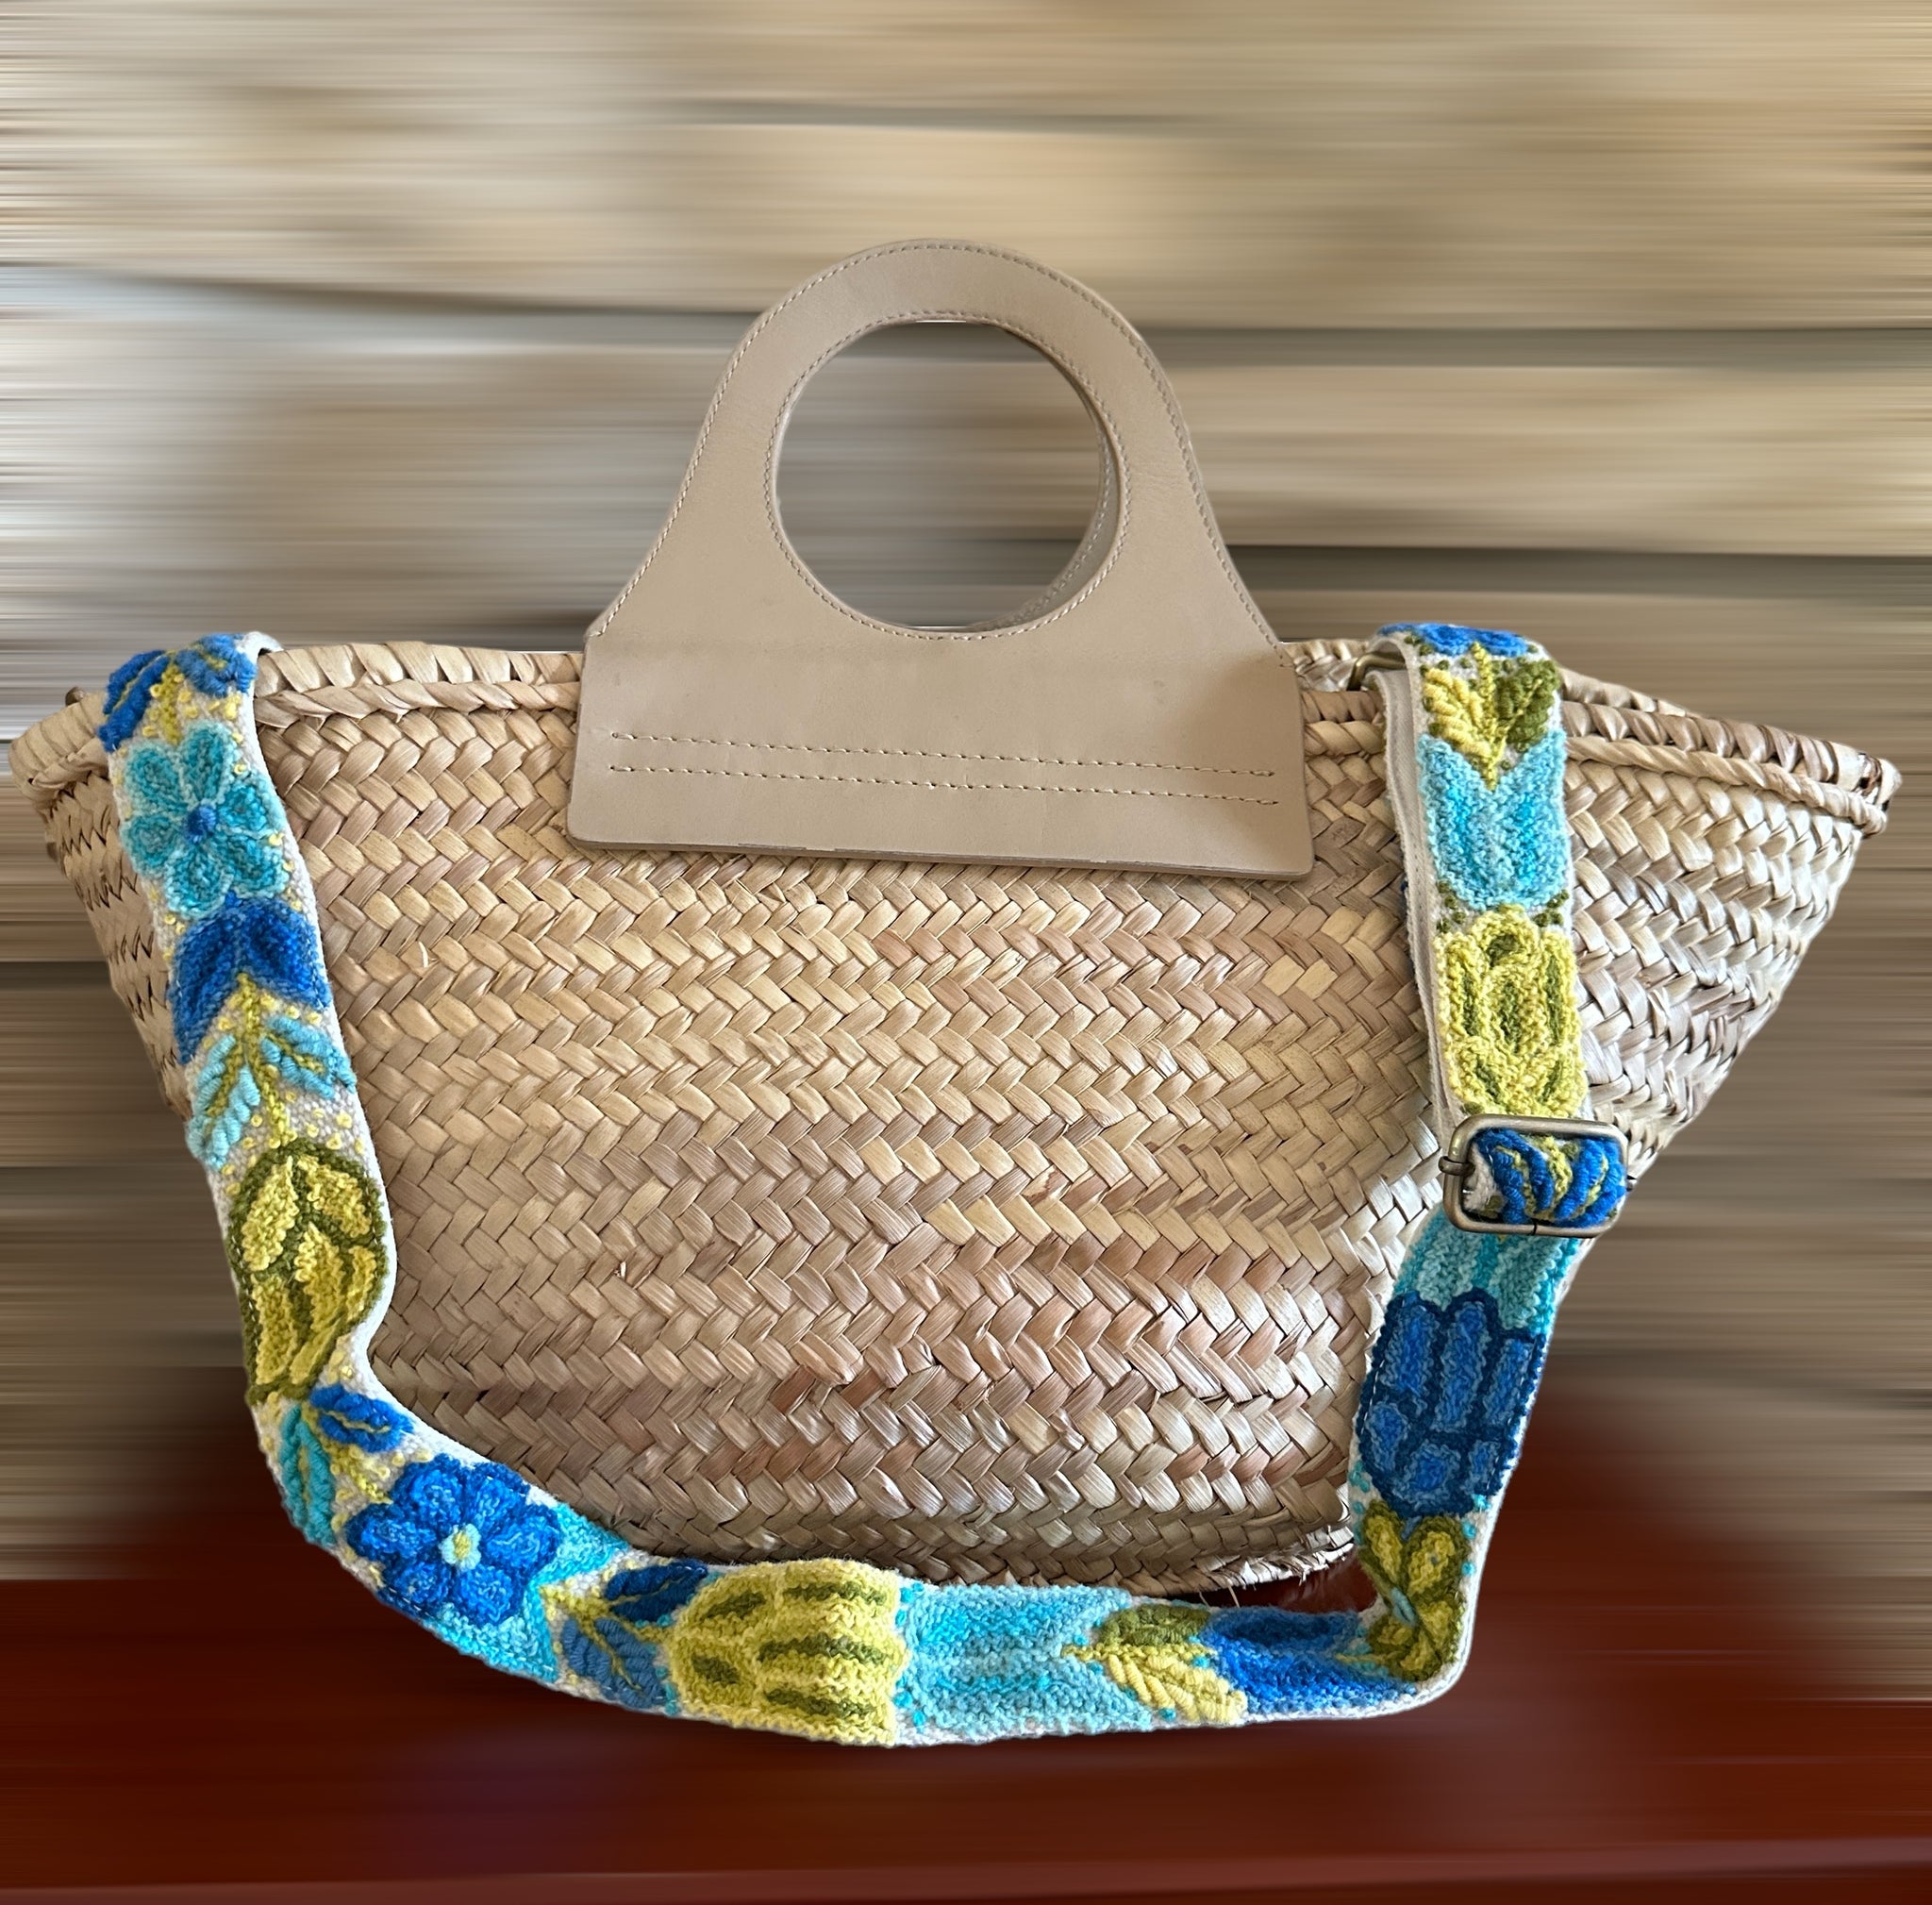 Embroidered Adjustable Handbag Strap, Purse Strap, Camera Strap - Andi –  Kuyay Peruvian Designs